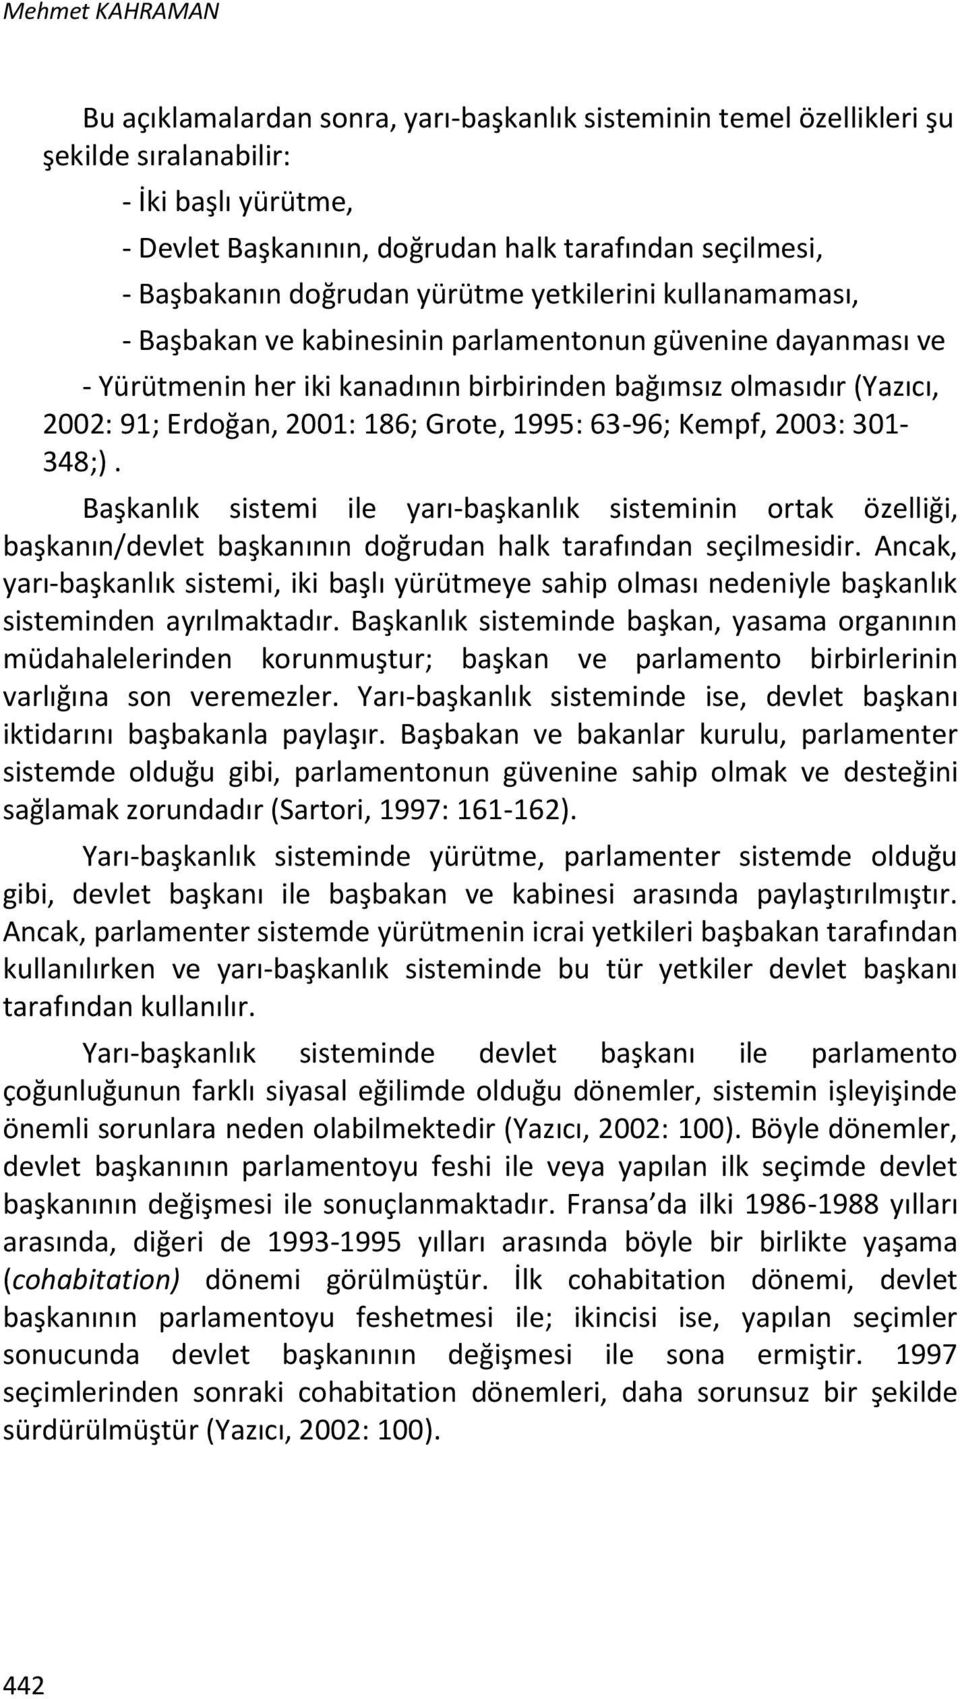 Erdoğan, 2001: 186; Grote, 1995: 63-96; Kempf, 2003: 301-348;). Başkanlık sistemi ile yarı-başkanlık sisteminin ortak özelliği, başkanın/devlet başkanının doğrudan halk tarafından seçilmesidir.